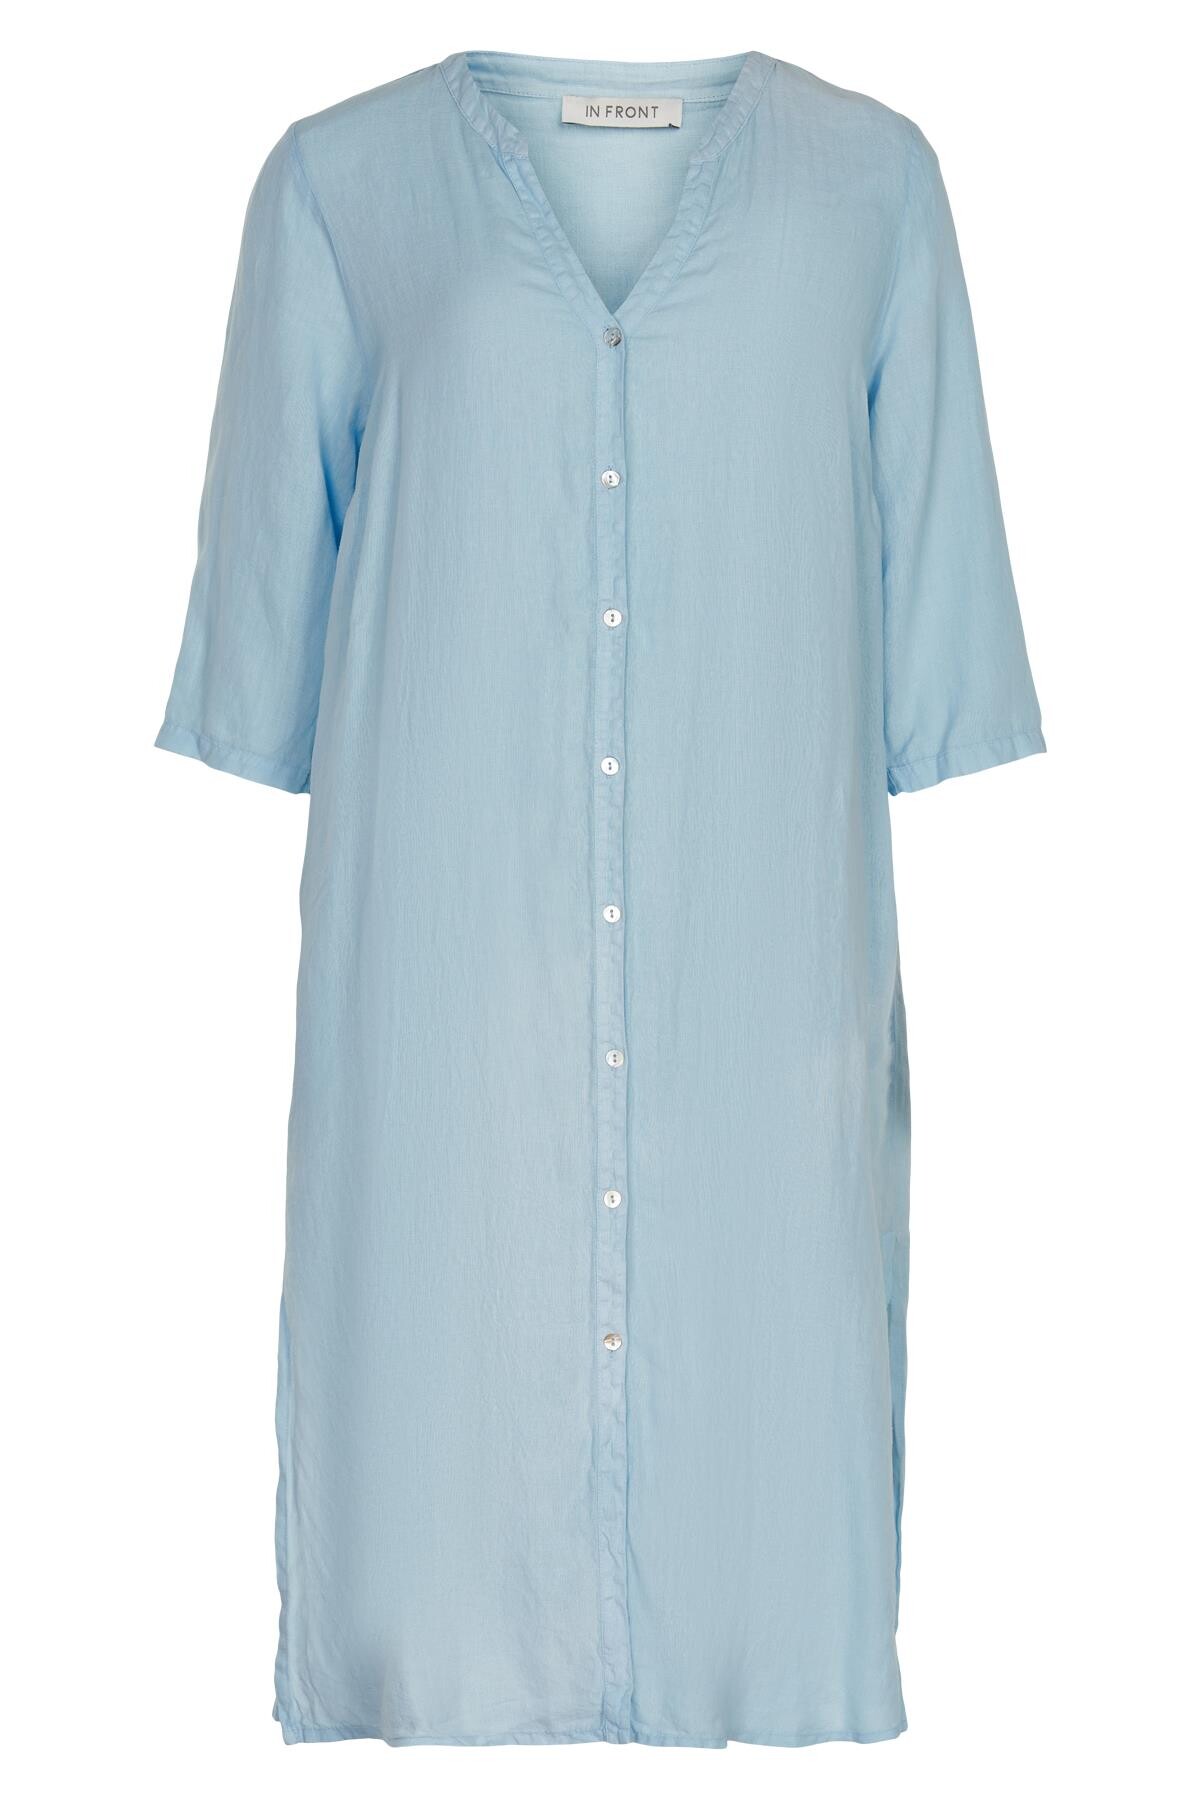 Billede af IN FRONT Lino Lang Skjortekjole, Farve: Light Blue, Størrelse: S, Dame